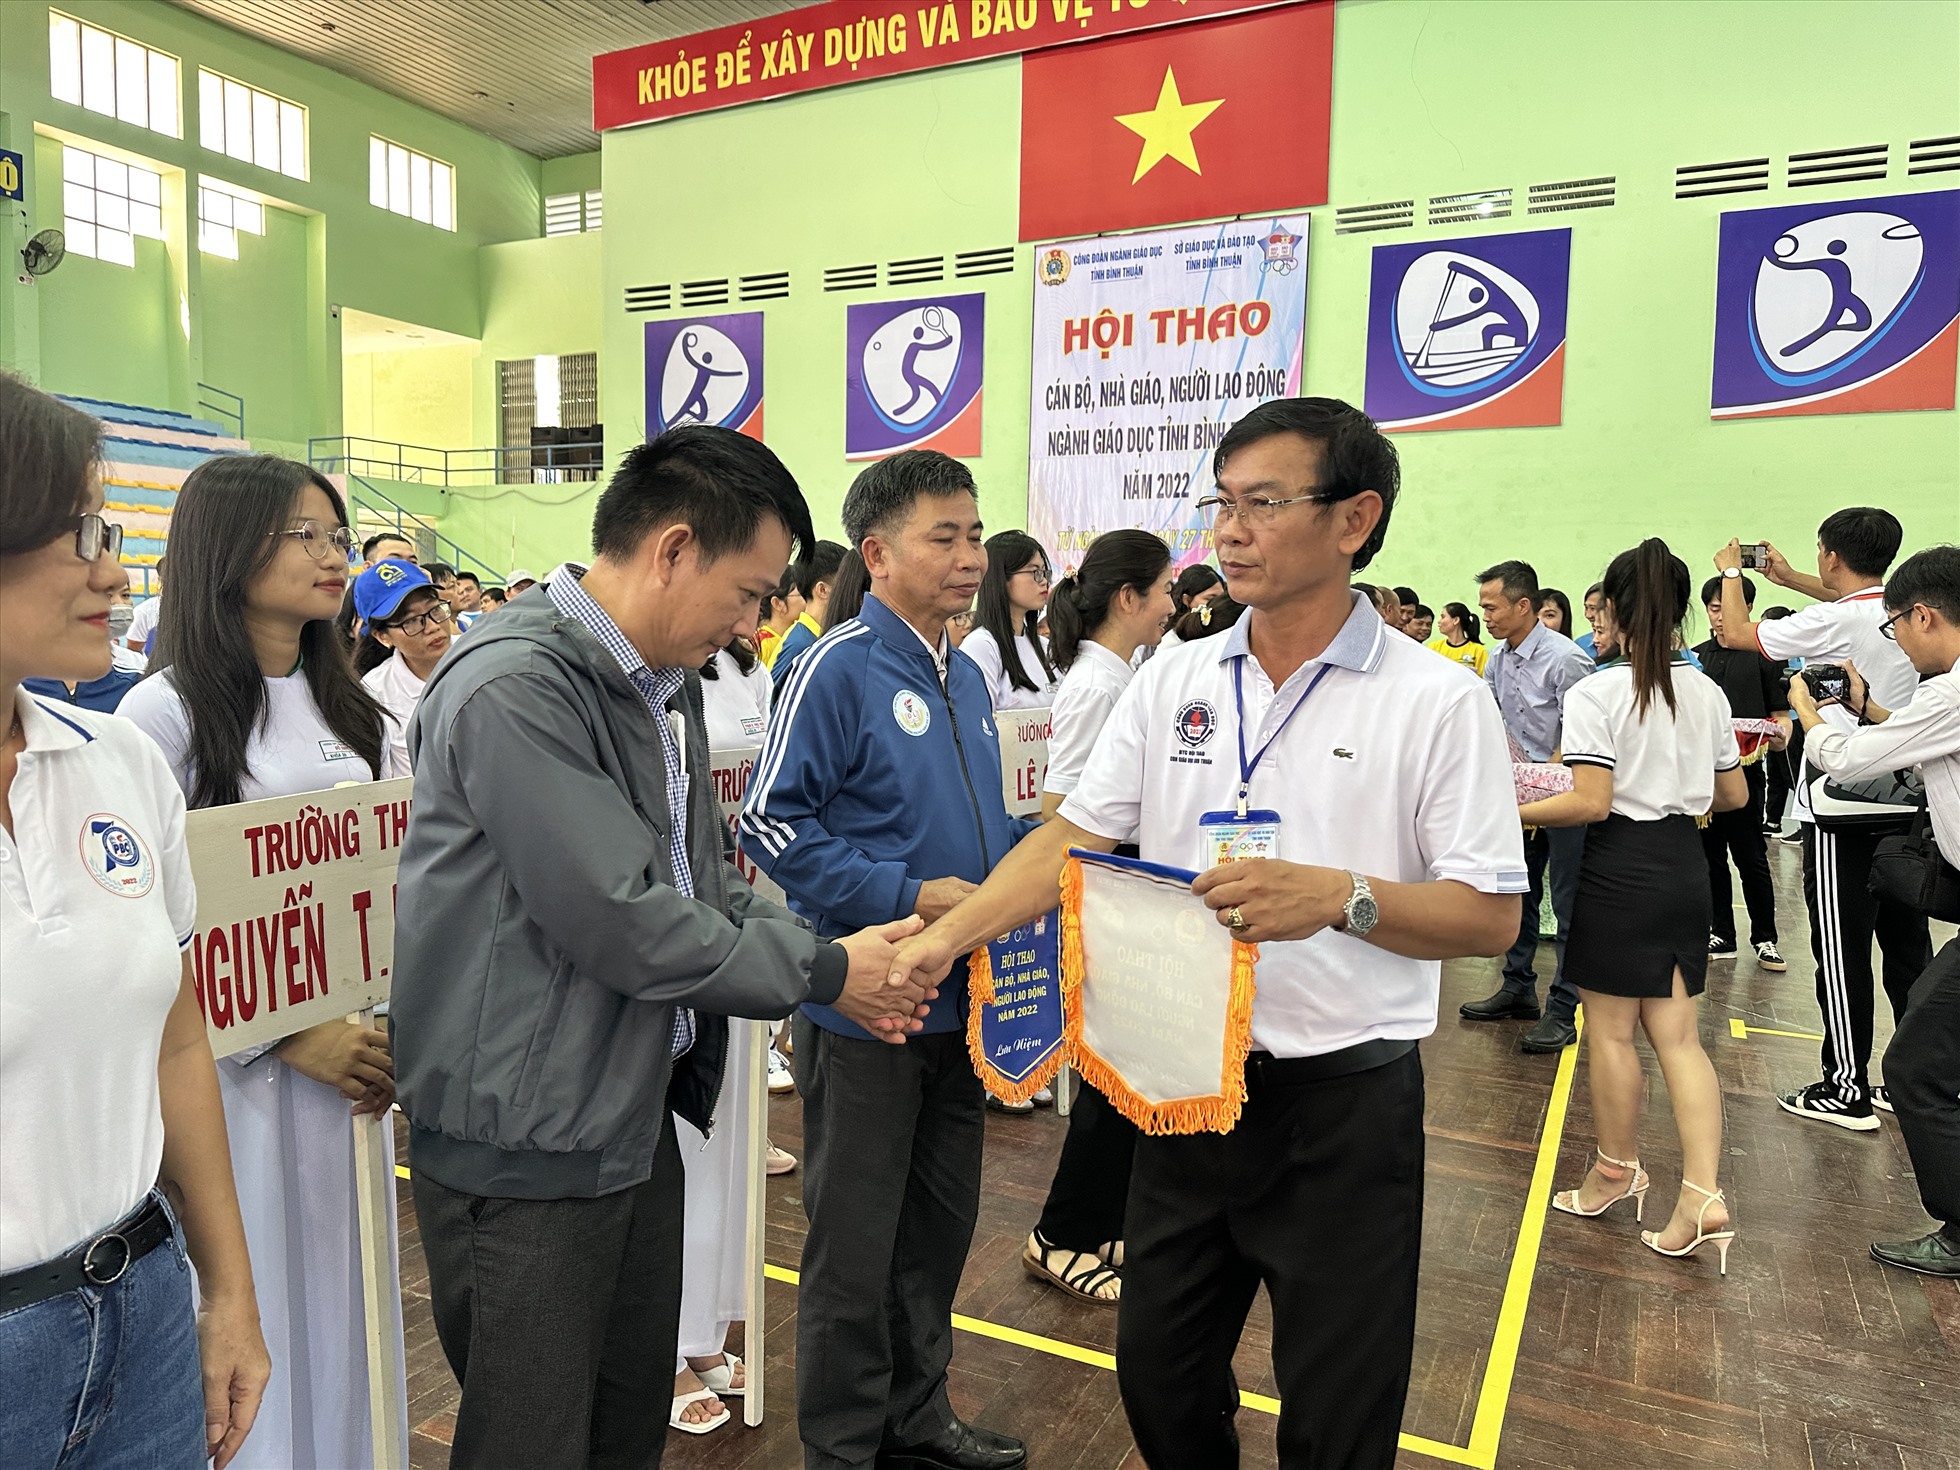 Ông Đặng Minh Trí, phó chủ tịch phụ trách Công đoàn ngành giáo dục tỉnh trao cờ lưu niệm cho các đoàn. Ảnh: Duy Tuấn